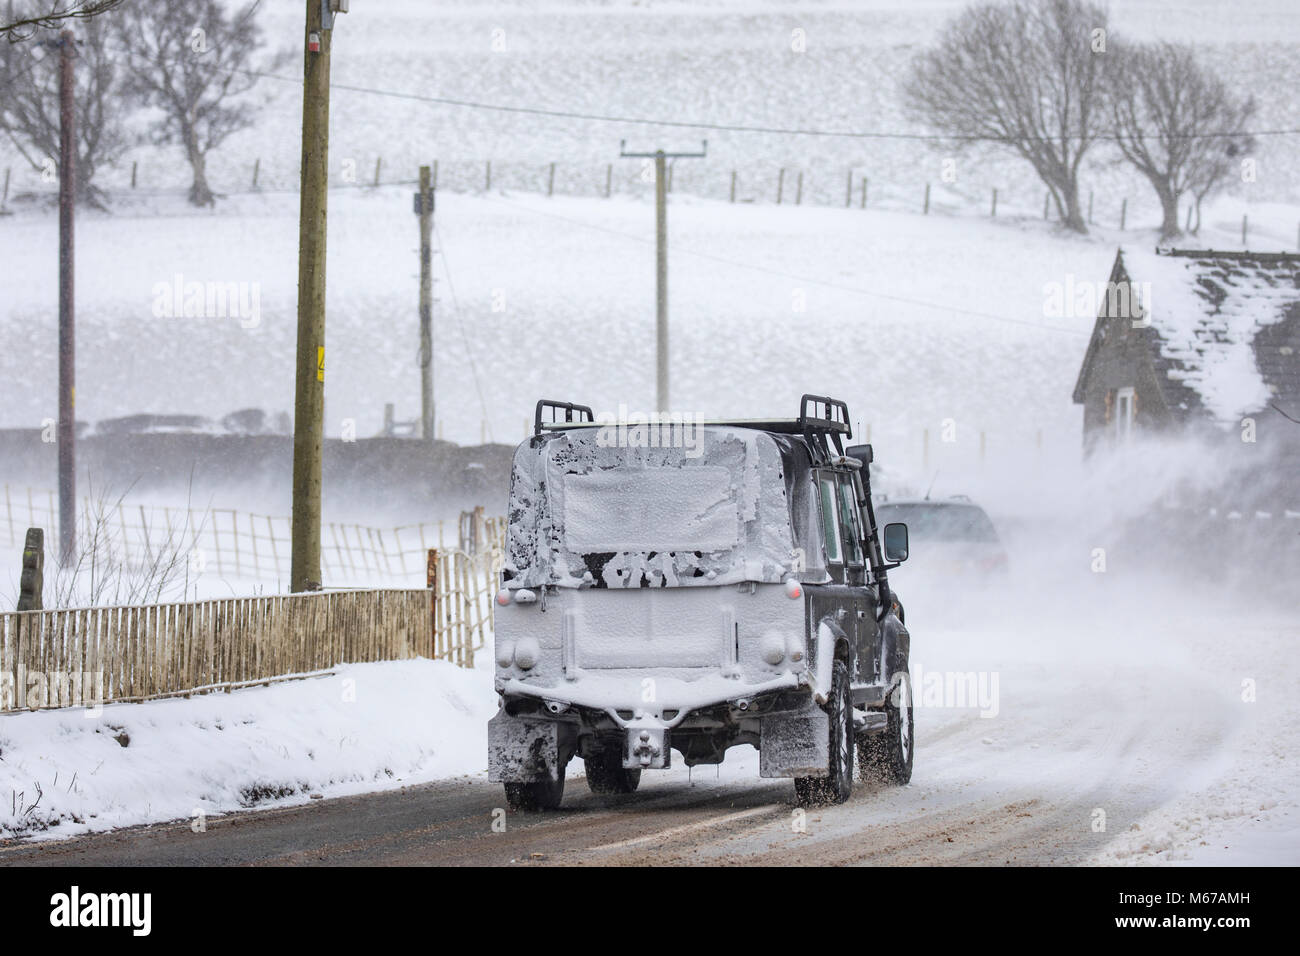 La tempête Emma et bête de la bête créé conditions routières dangereuses avec la neige du vent et de la neige soufflée dans le village rural de Bylchau dans Denbighshire coupés par les conditions météorologiques, au Pays de Galles, Royaume-Uni Banque D'Images